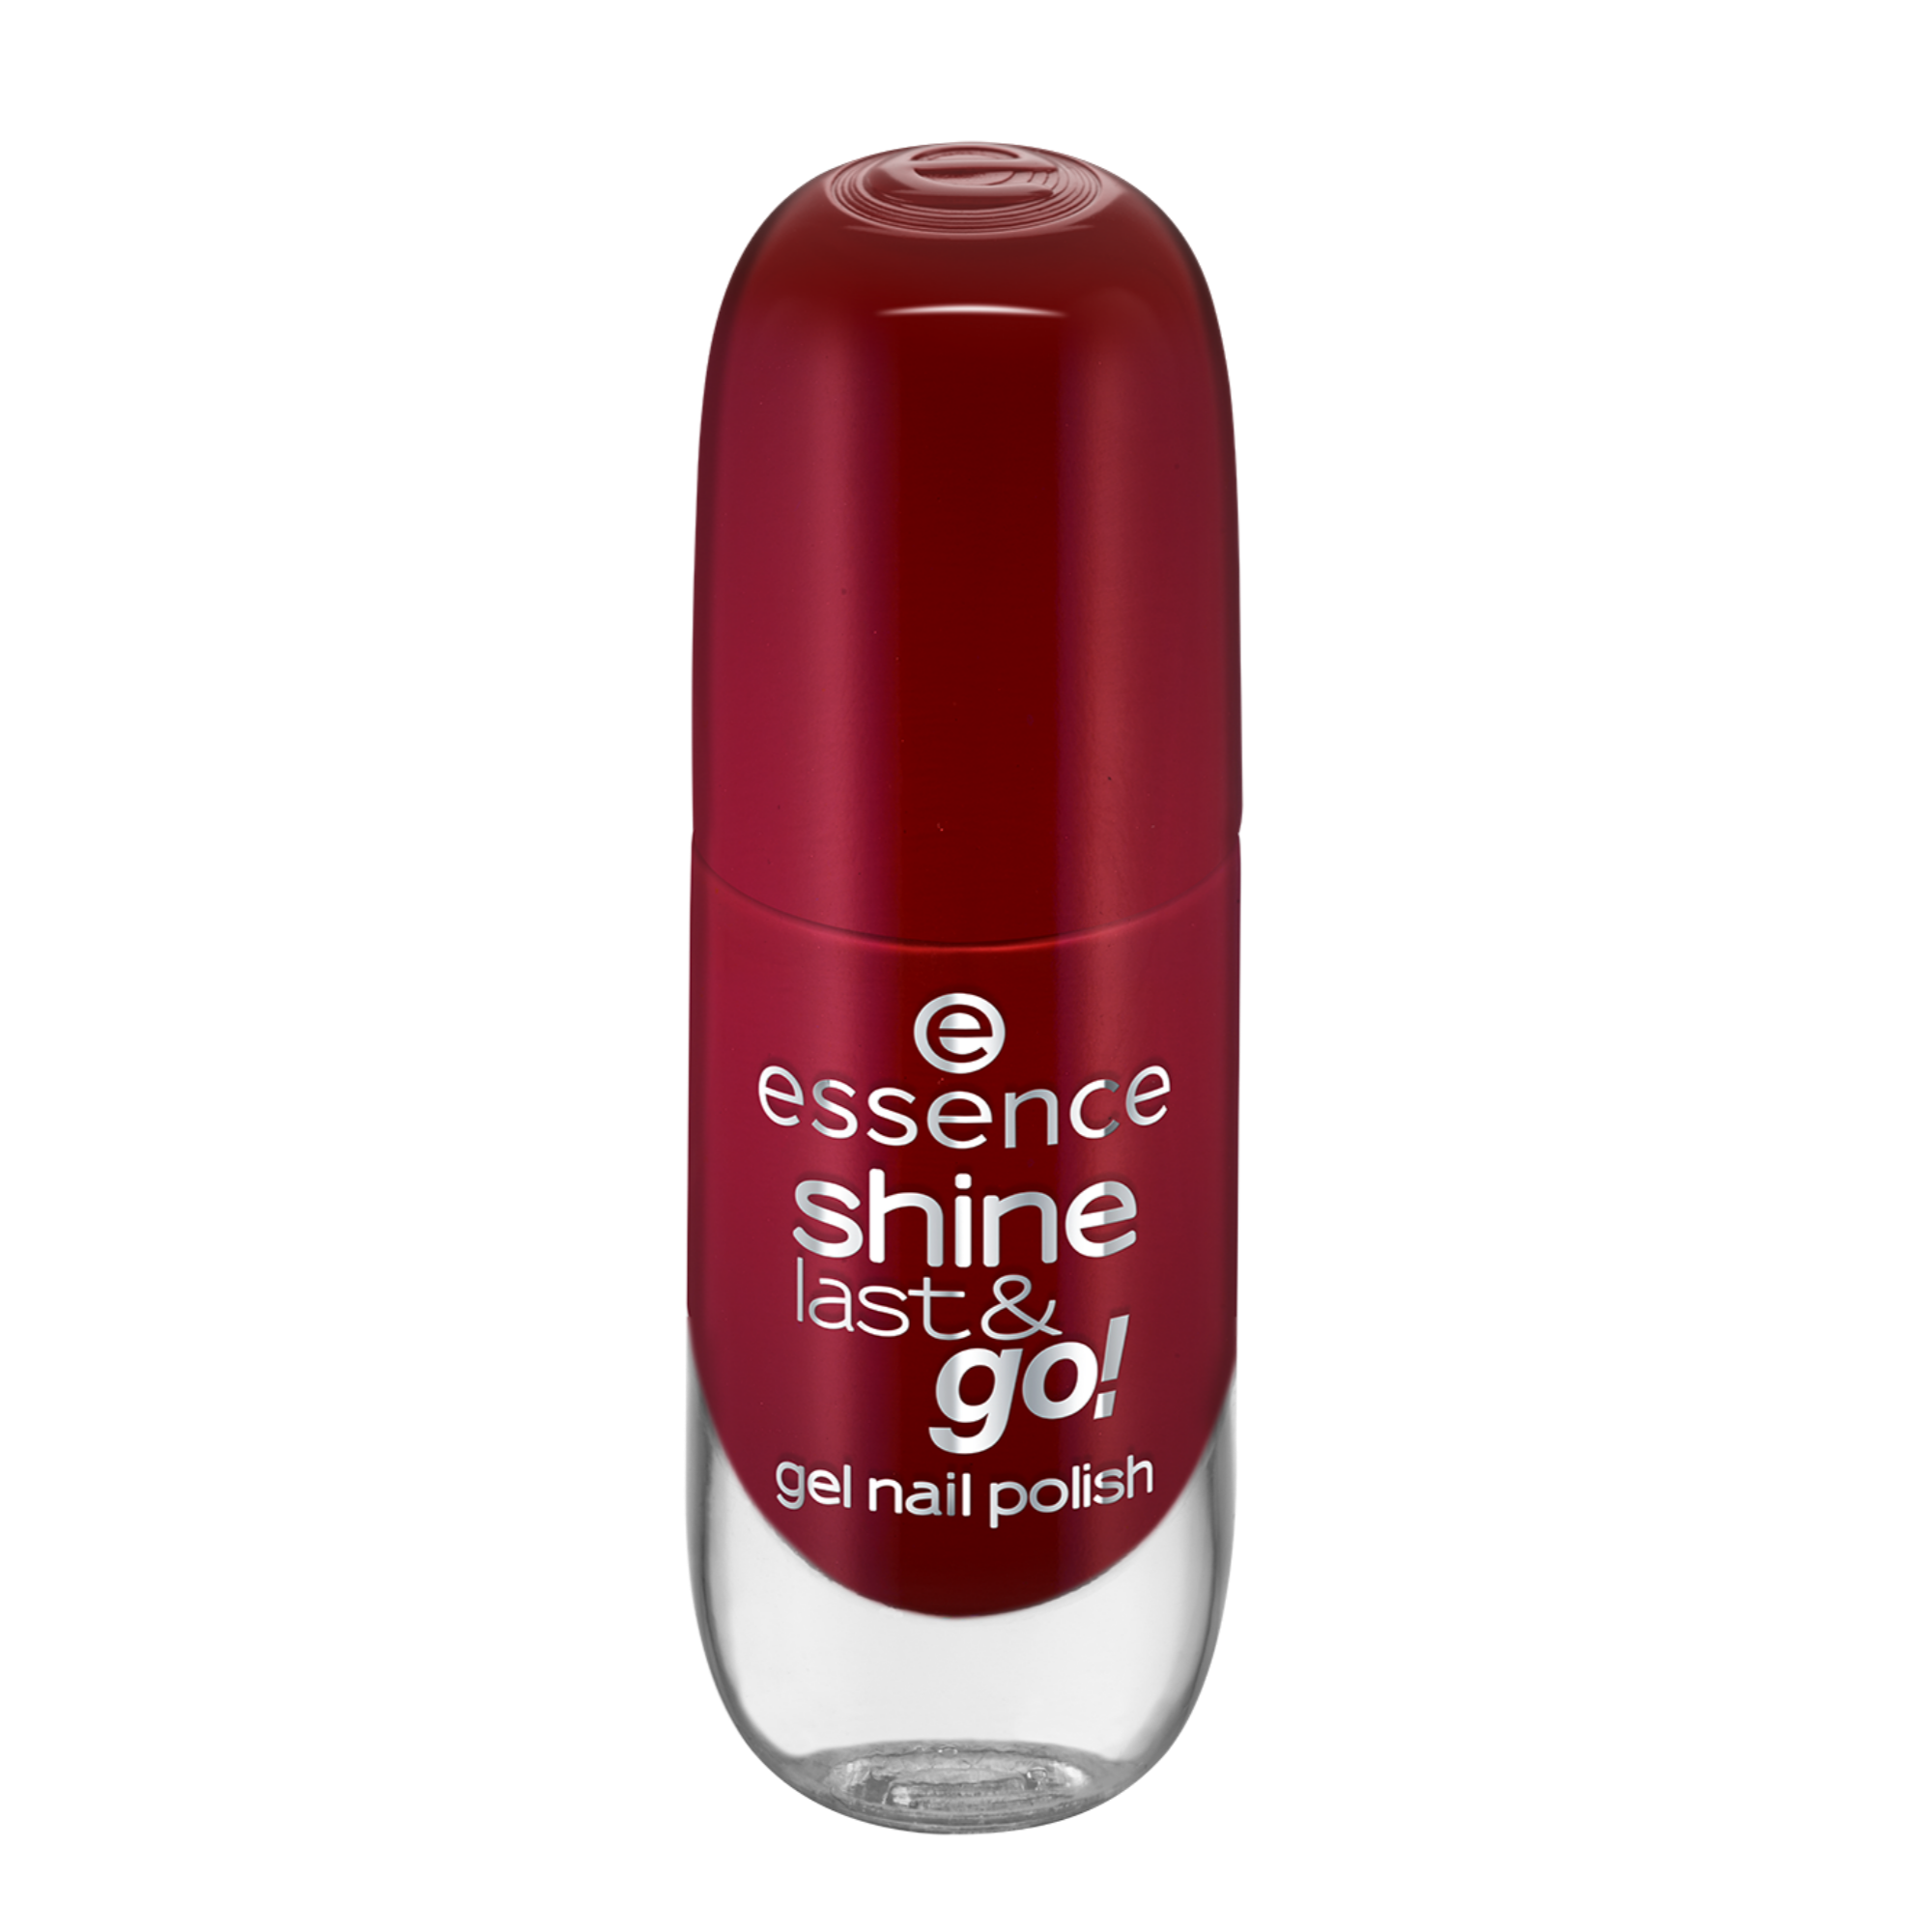 shine last & go! gel nail polish